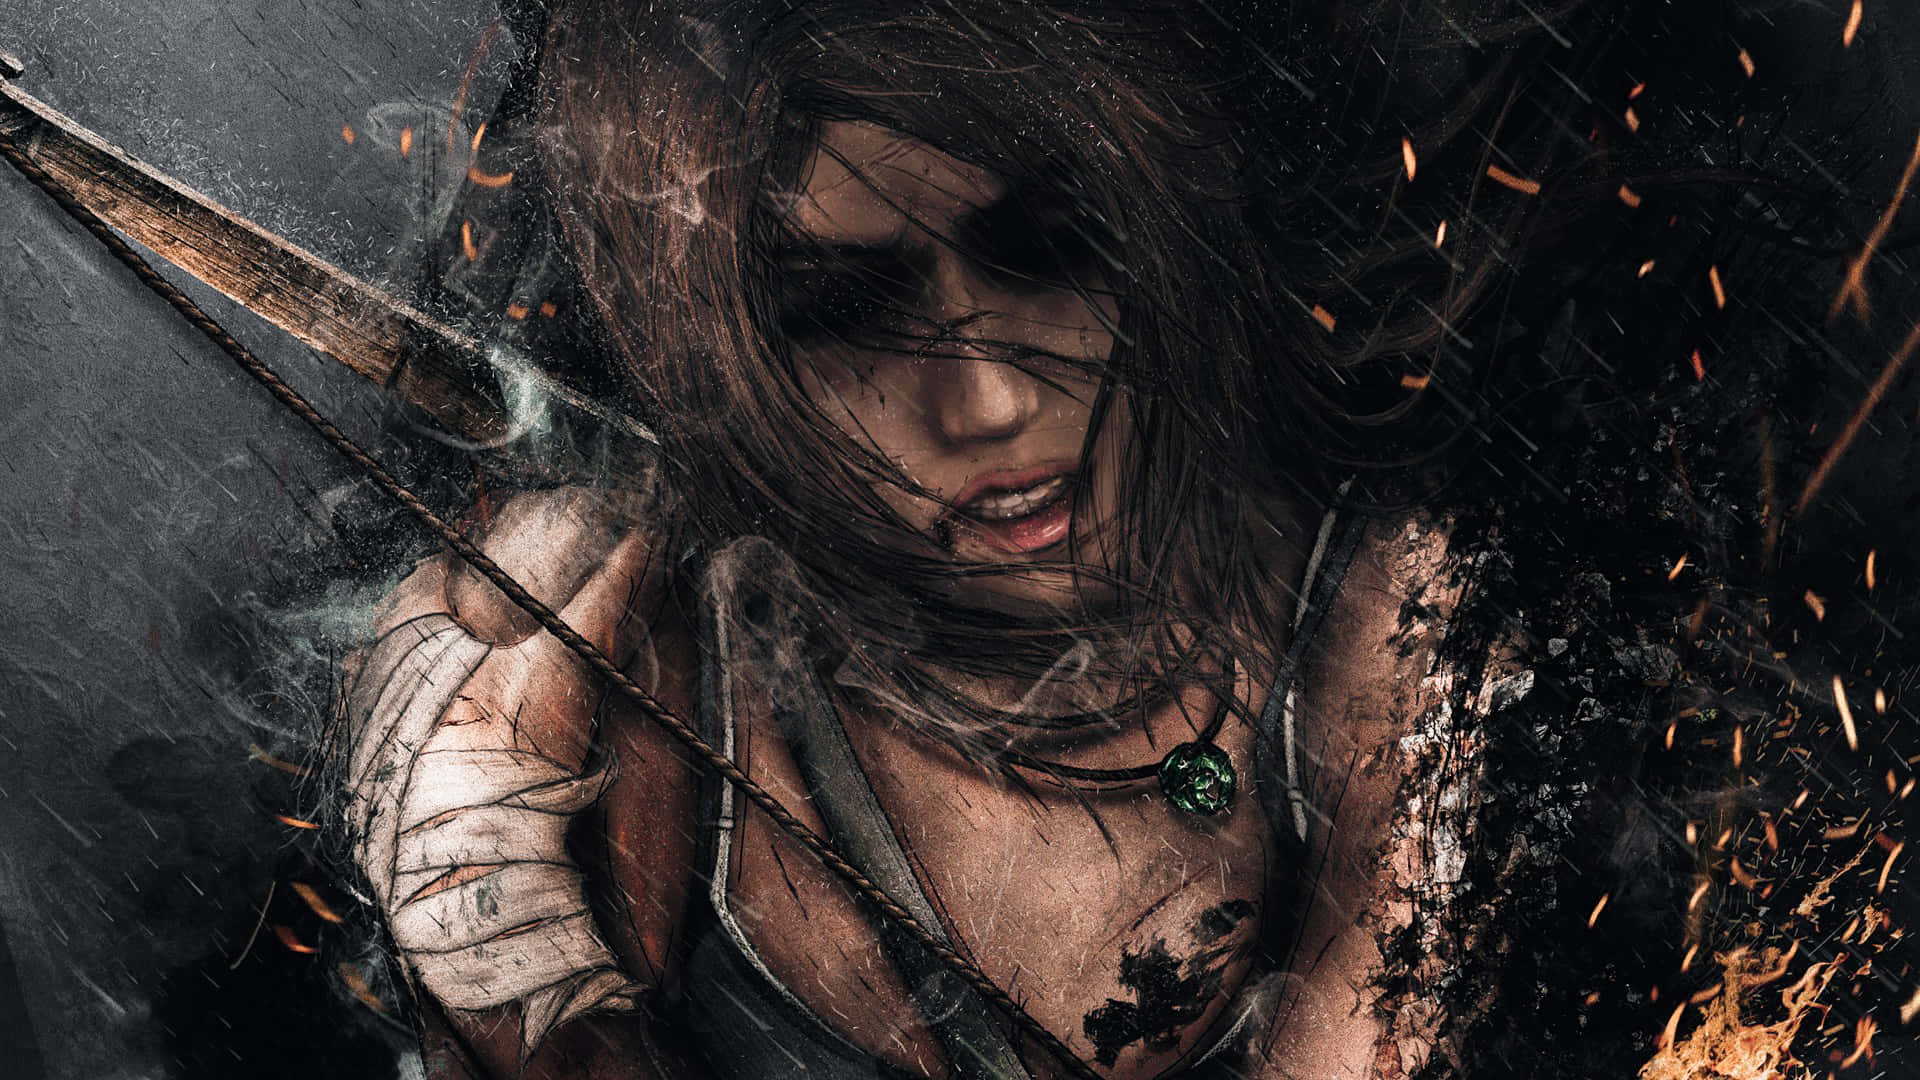 Ilmiglior Sfondo Di Shadow Of The Tomb Raider Con Una Piacevole Atmosfera Piovosa